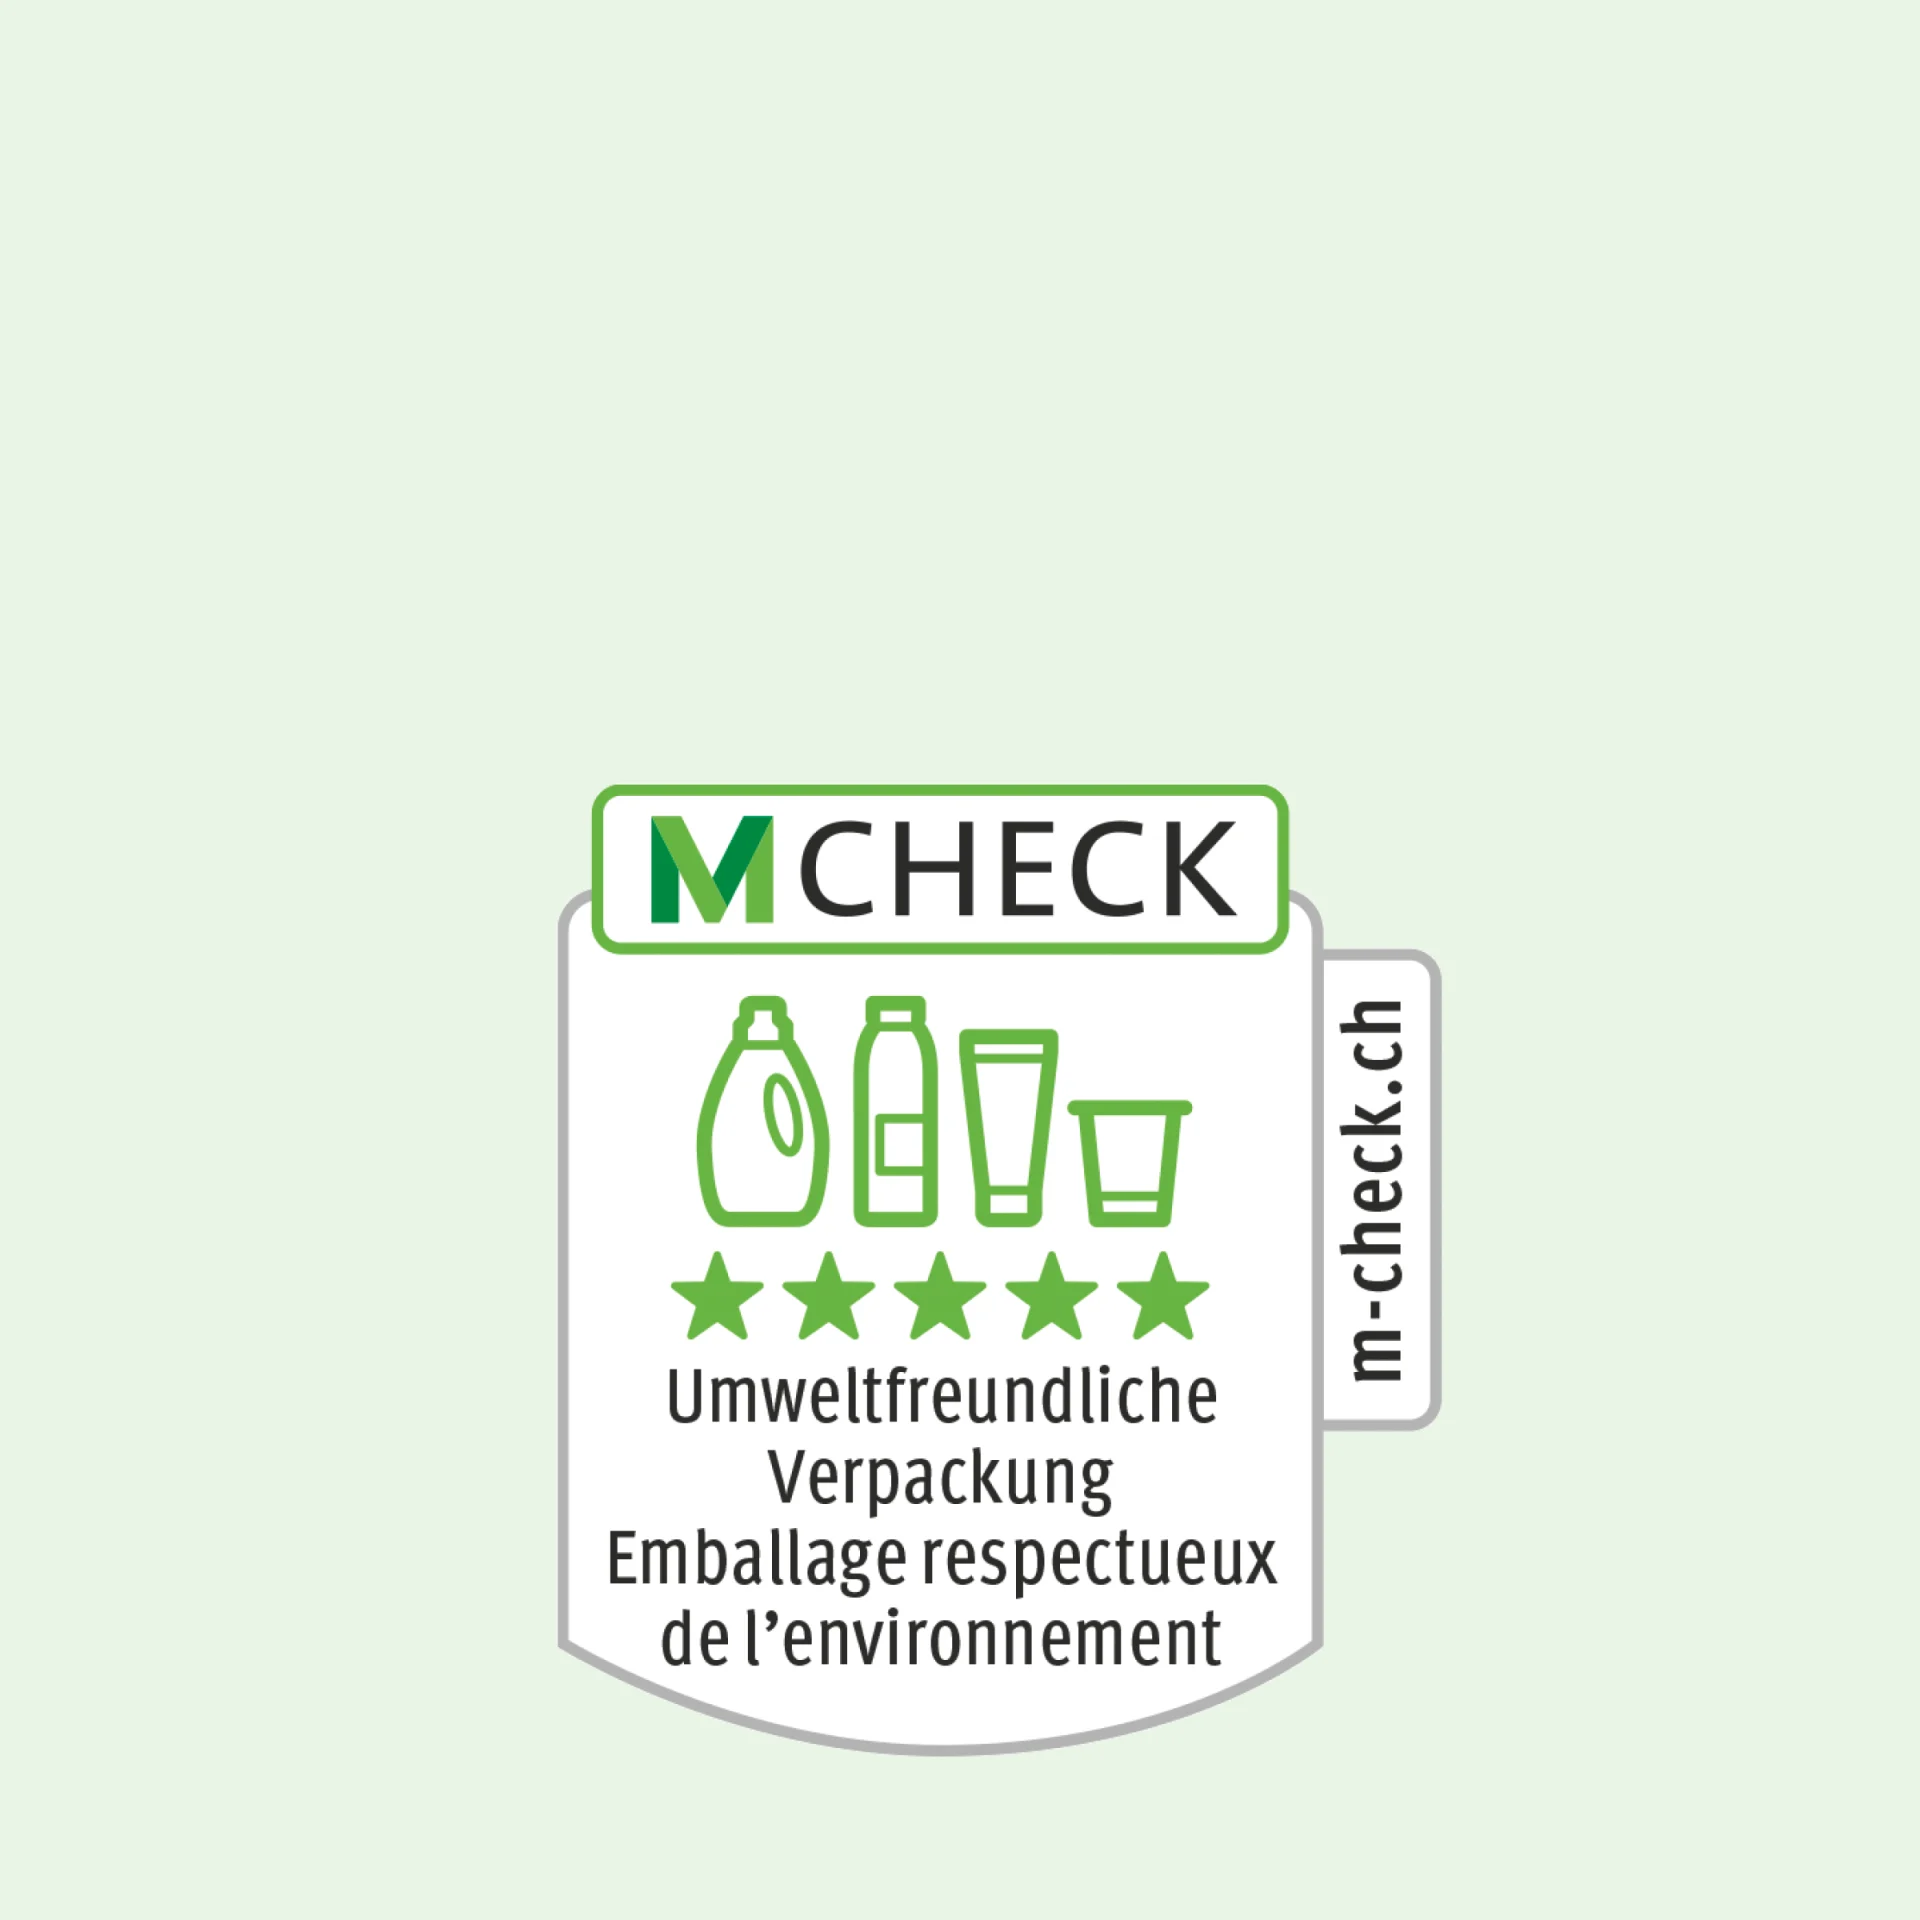 M-Check-Icon mit Verpackungen, darunter fünf Sterne in umweltfreundlichen Verpackungen